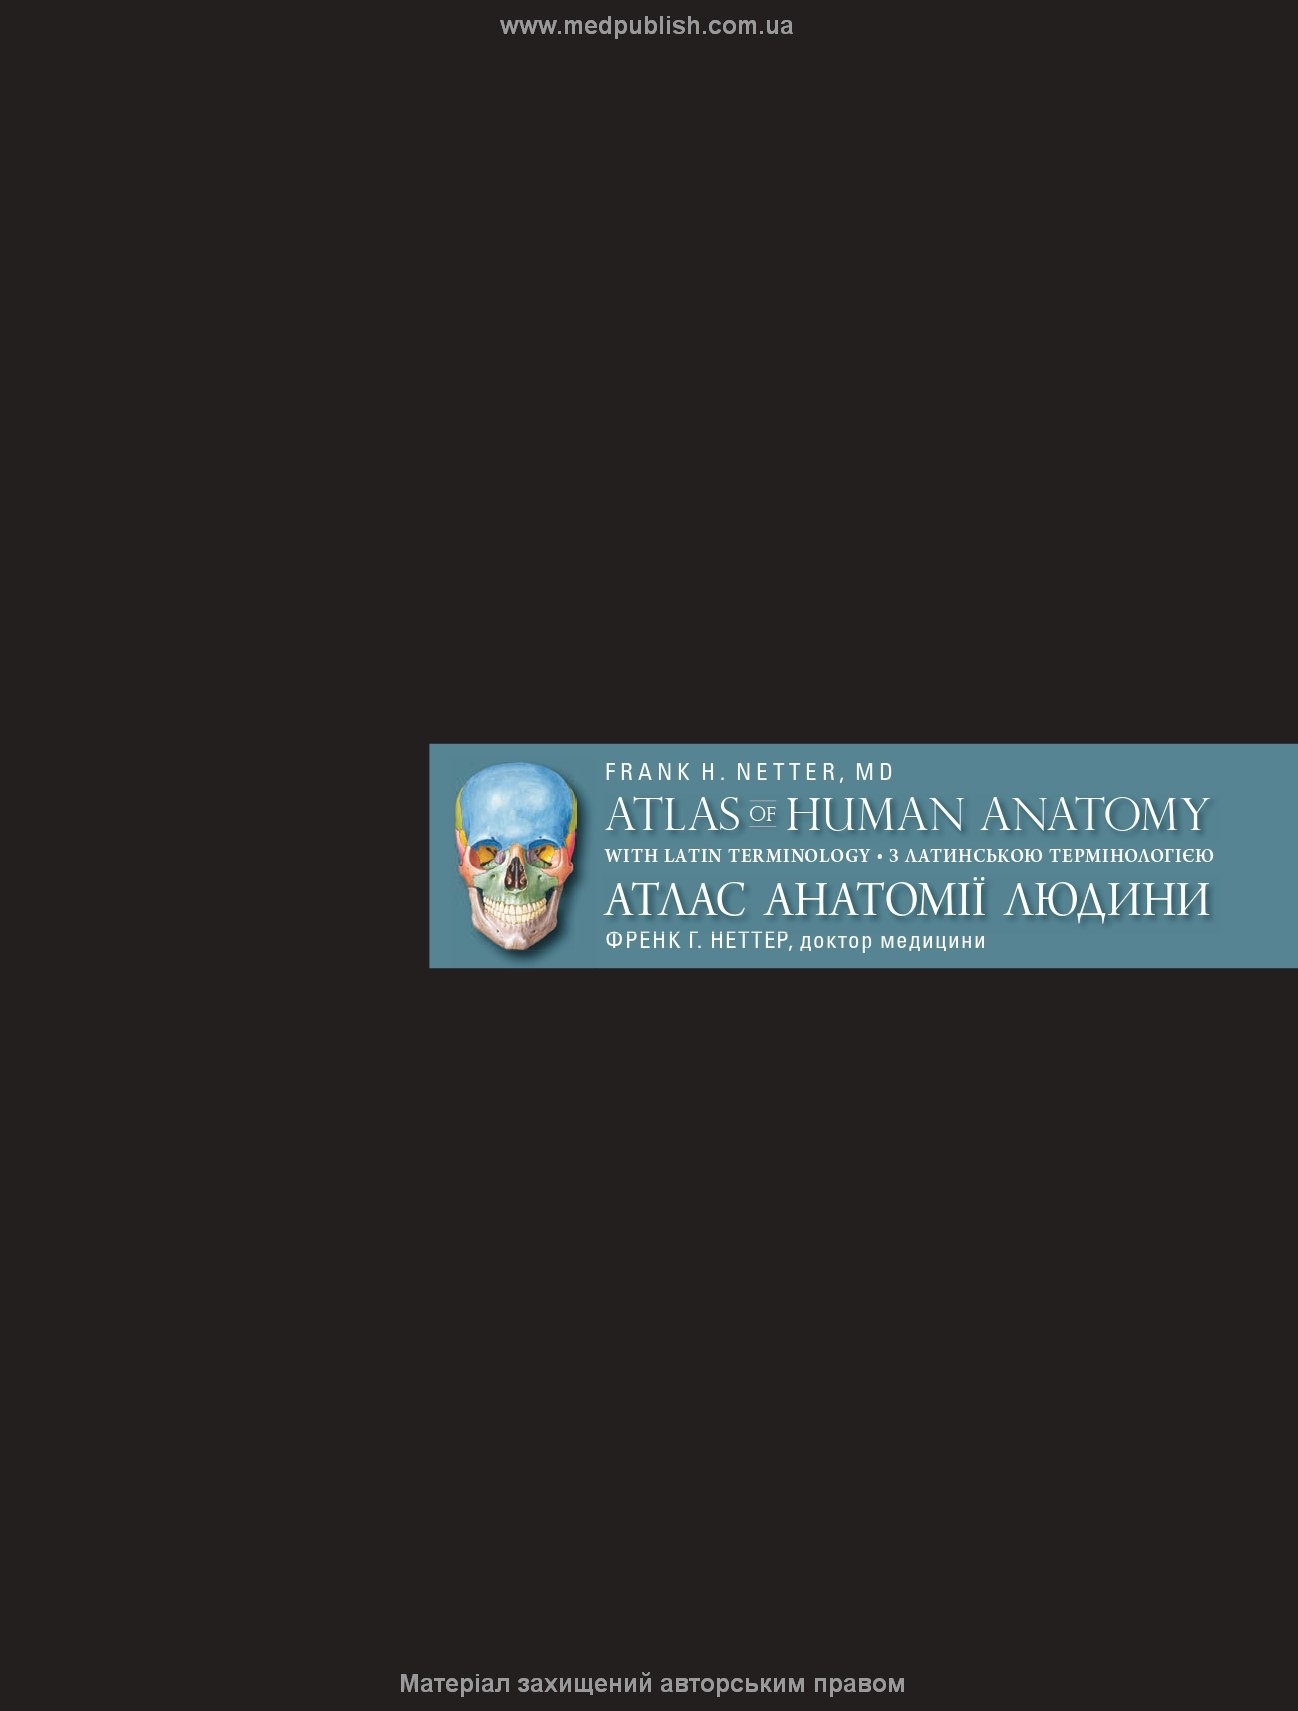 Атлас анатомії людини з латинською термінологією: 7-е видання. Автор — Френк Г. Неттер — доктор медицини.. 